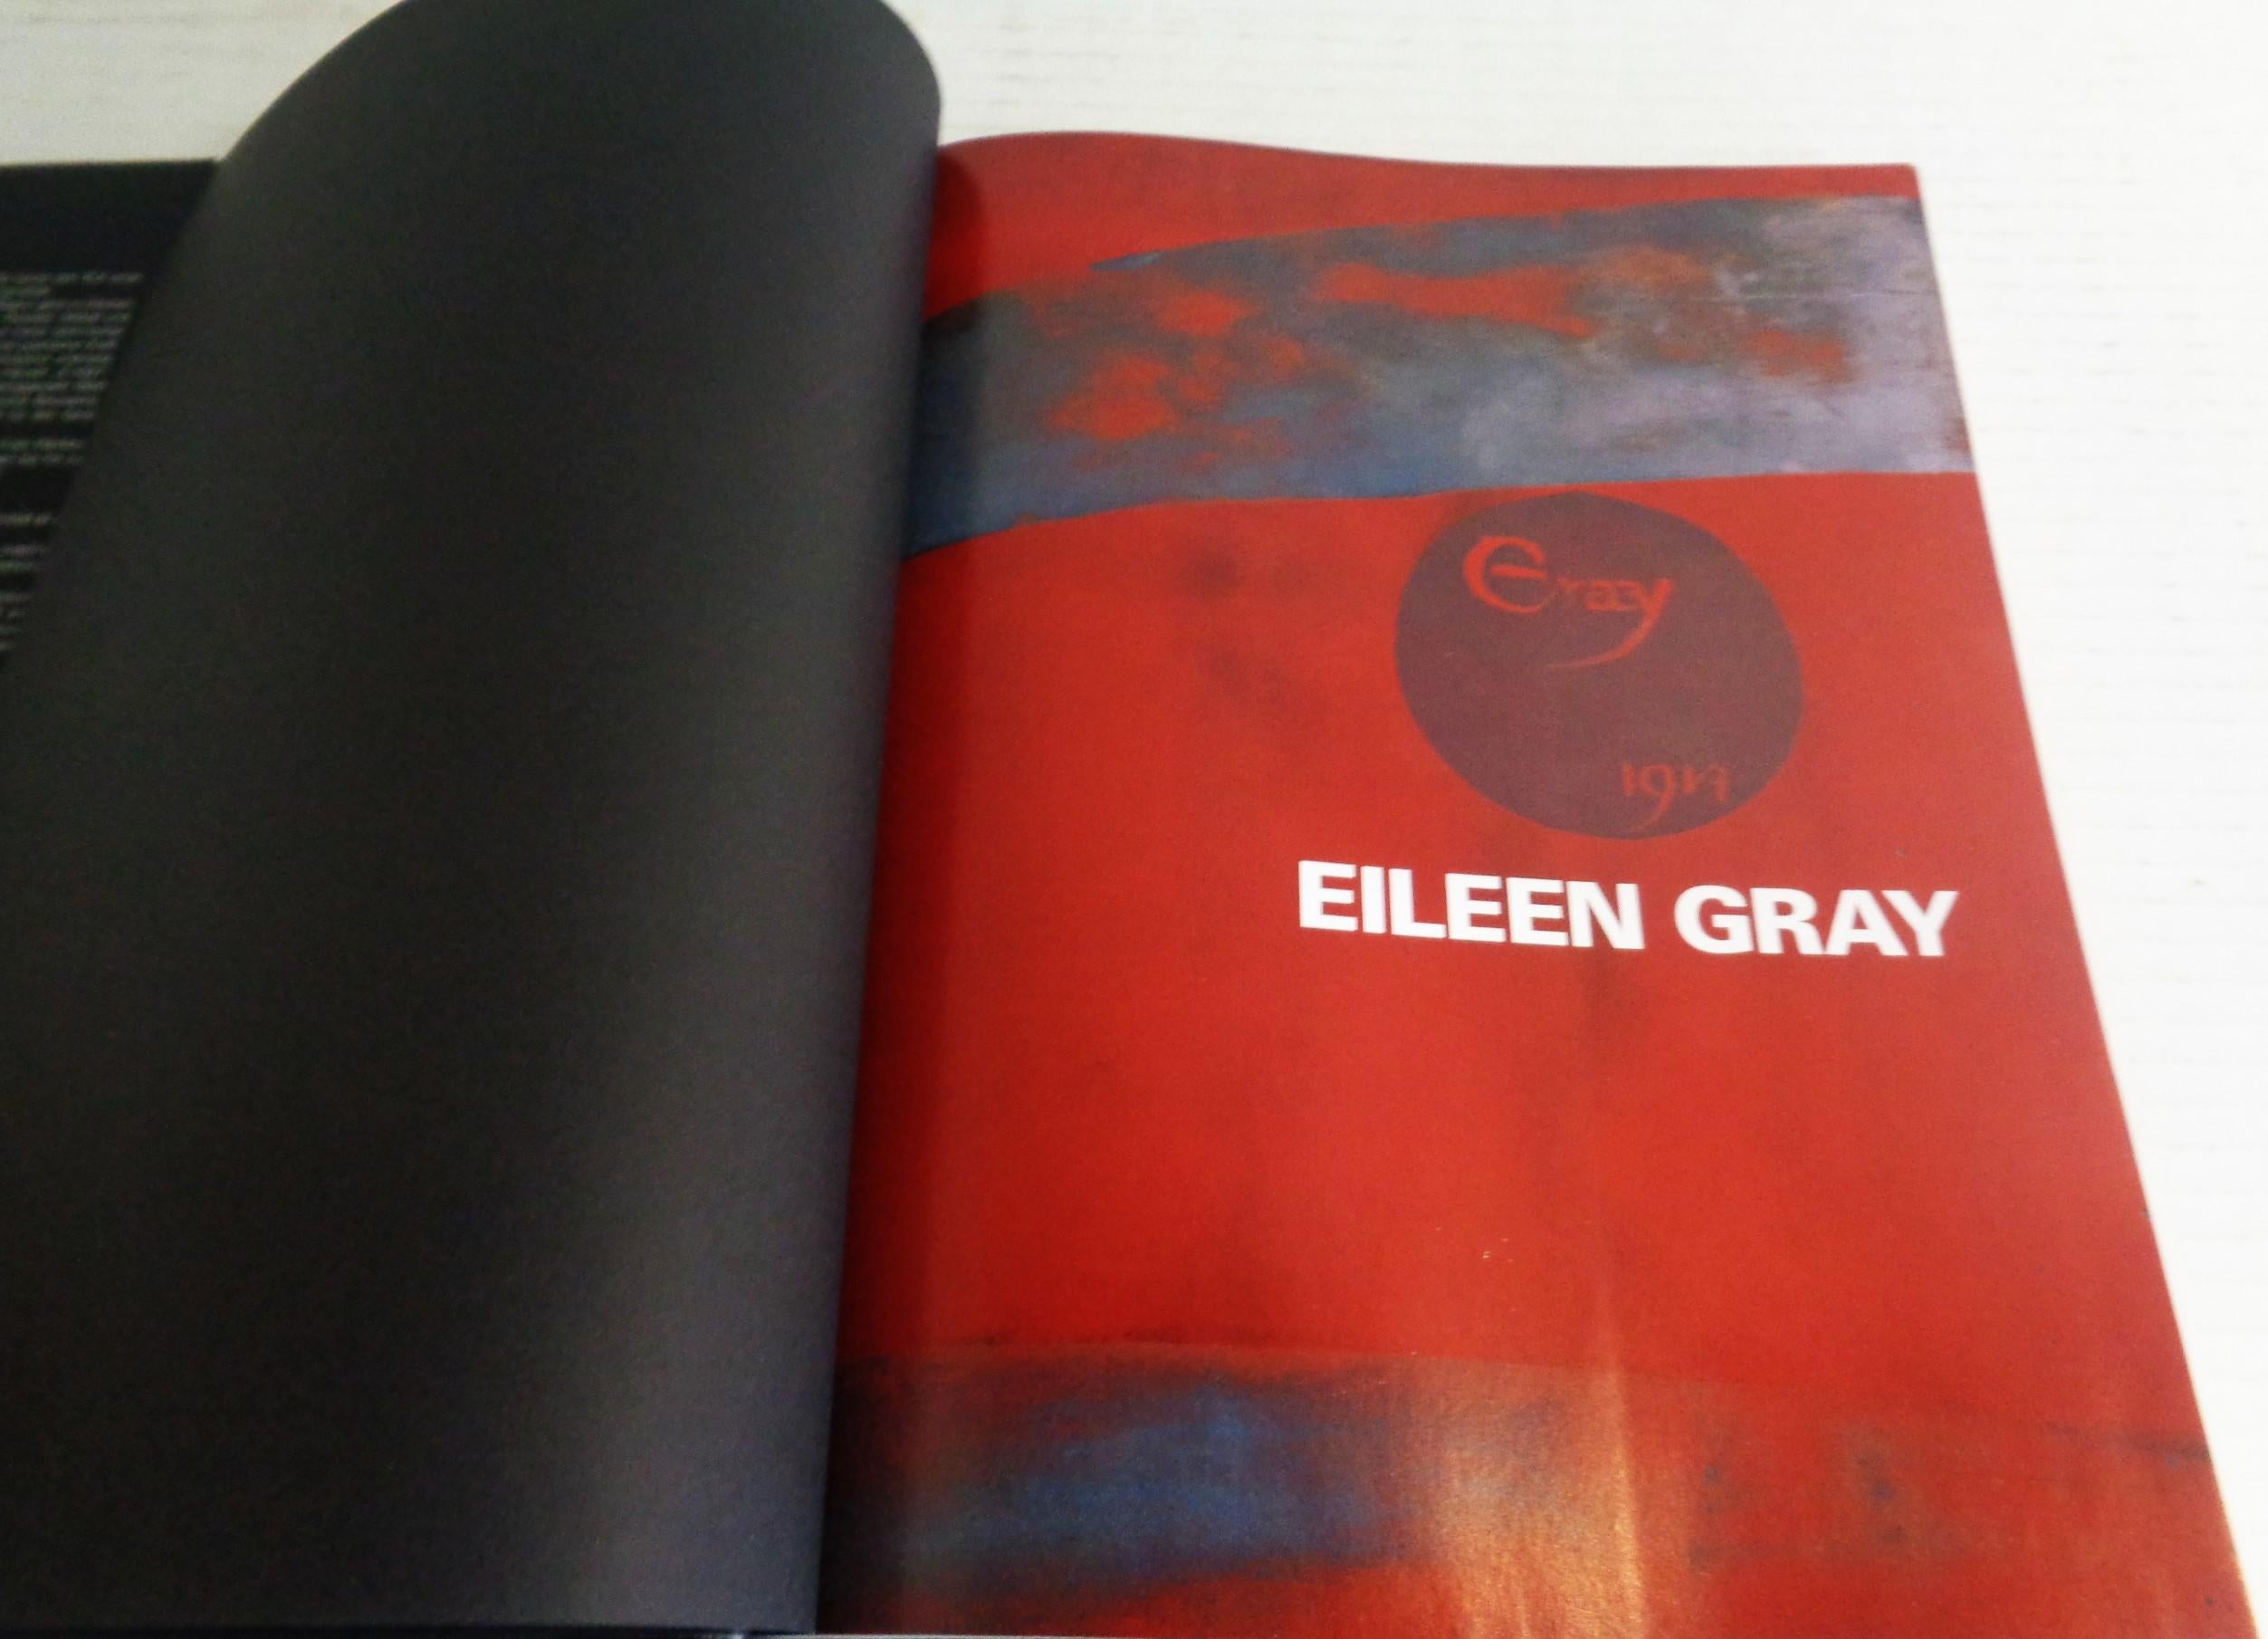 Paper Eileen Gray - Design and Architecture - Garner, Philippe - 2006 Taschen